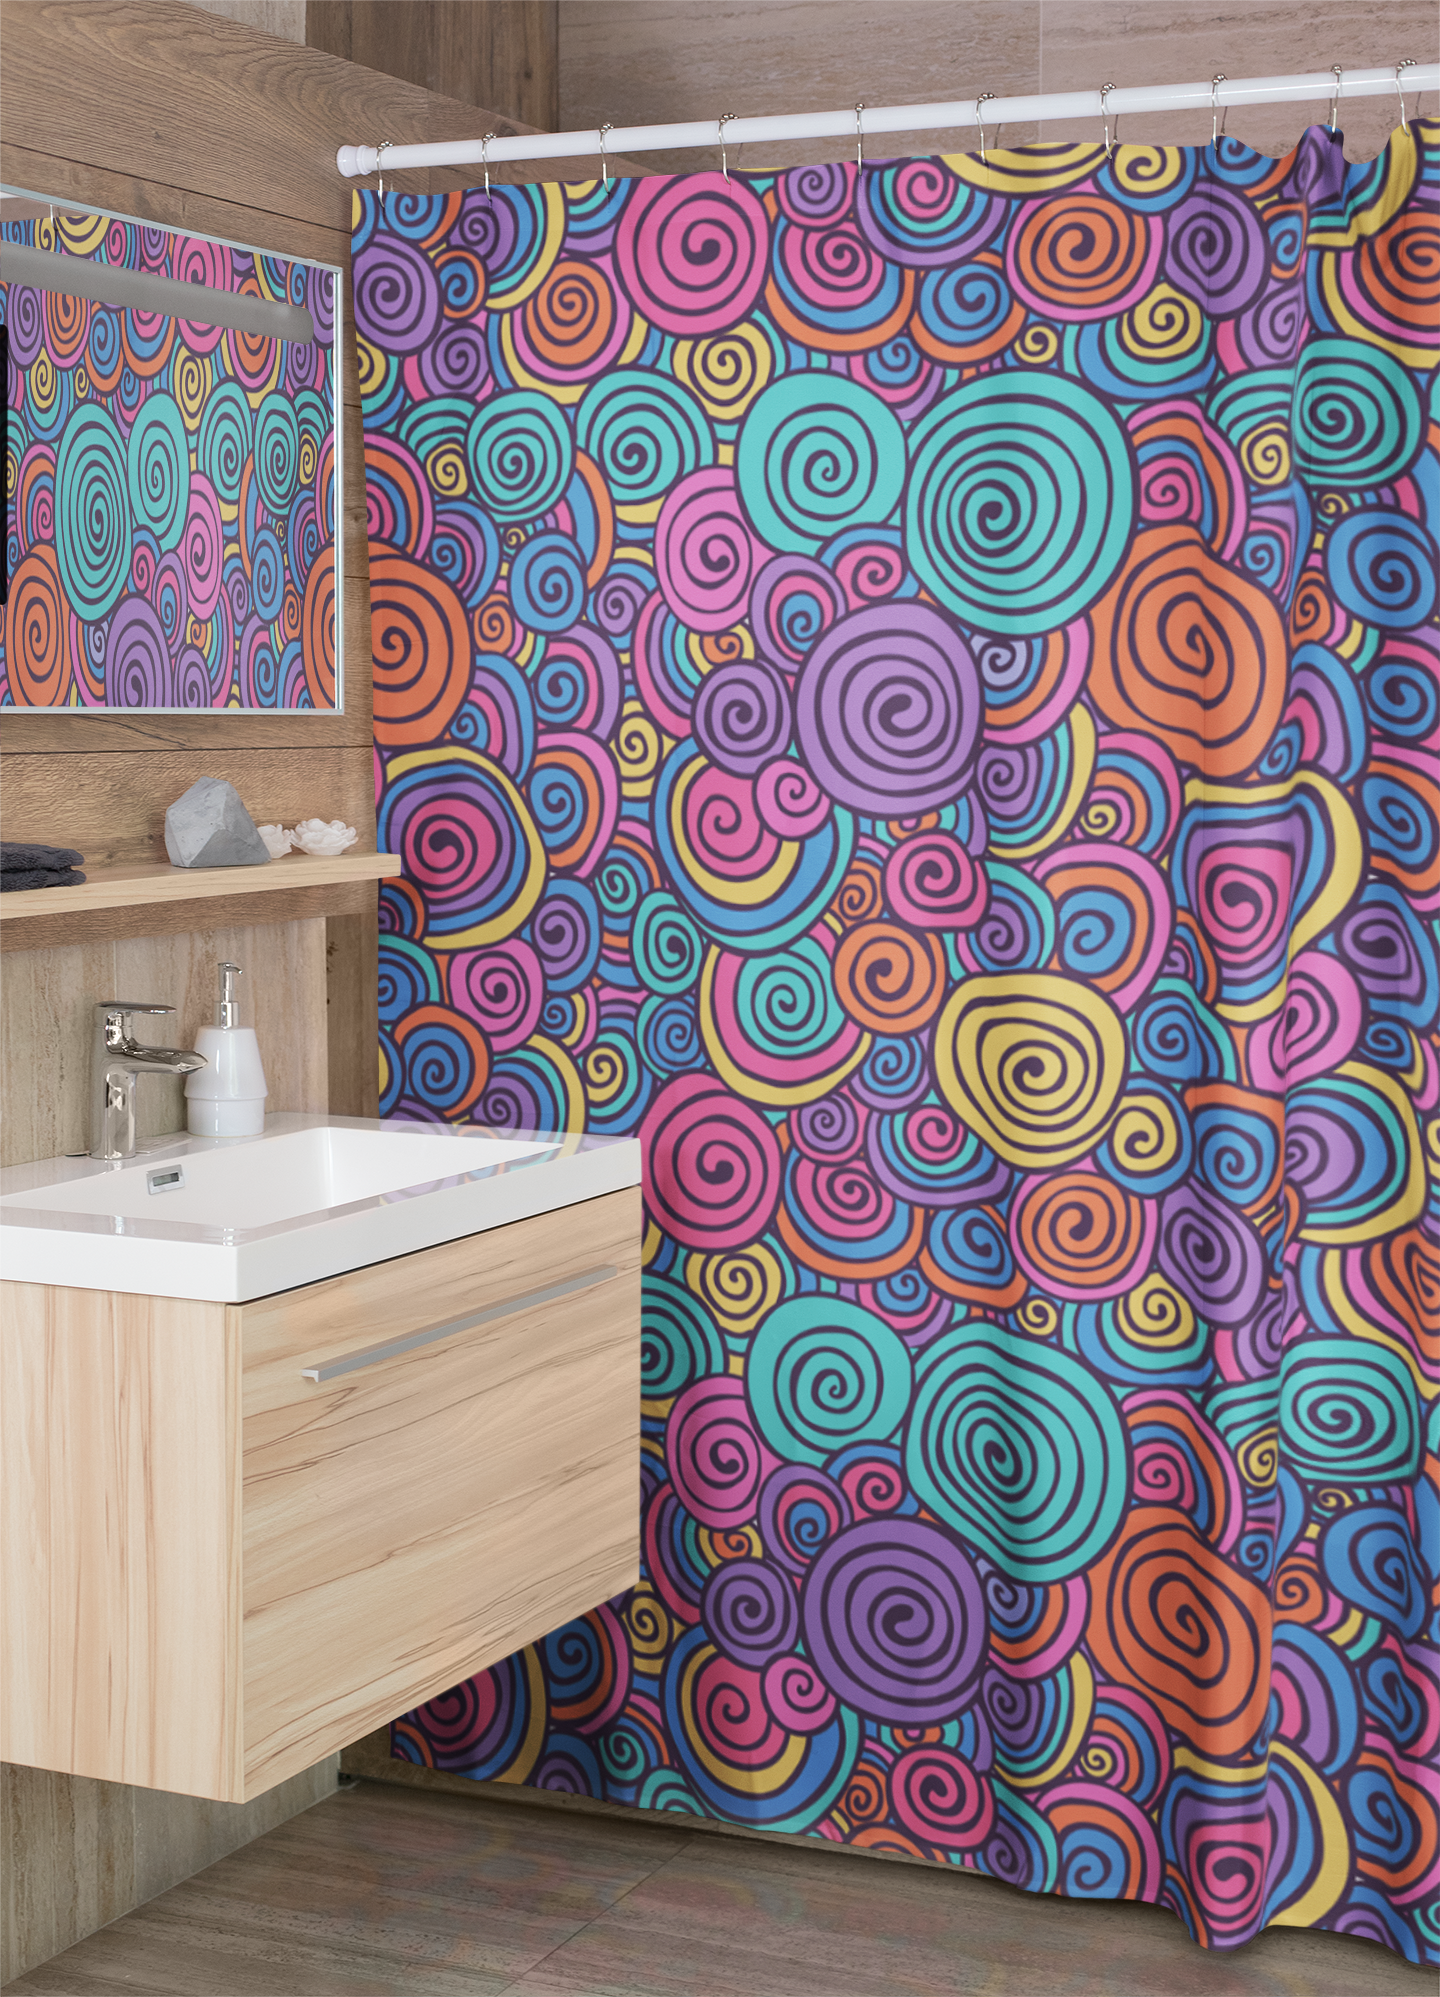 Hippie Spiral Shower Curtain - Trippy 70s Funky Swirls Bathroom Decor